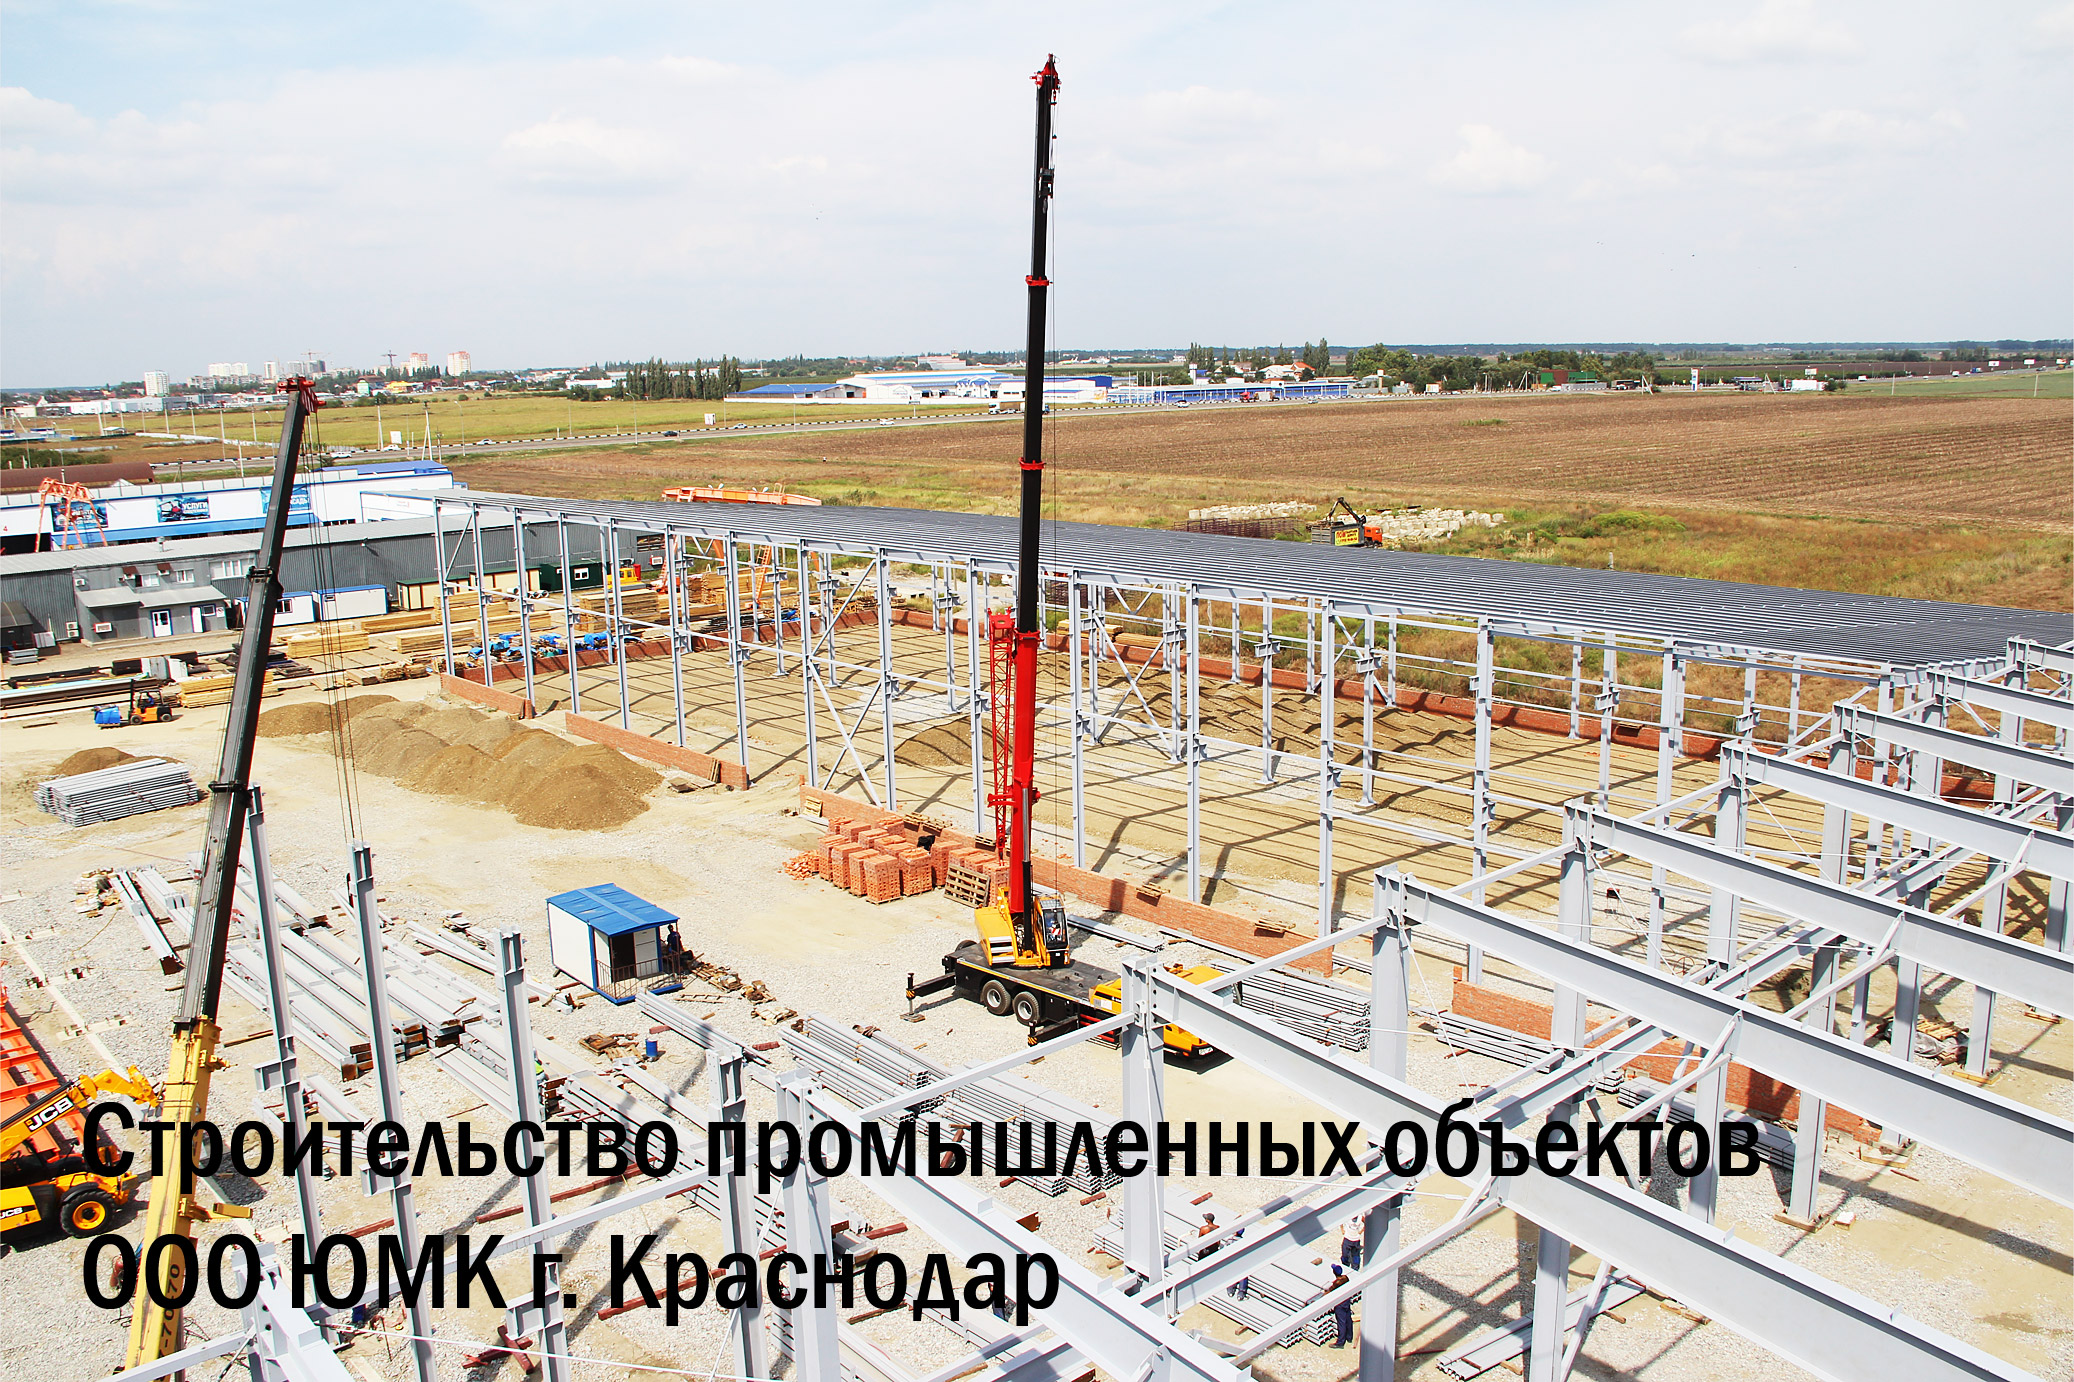 Строительство торговых центров из металлоконструкций Краснодар. Производство металлоконструкций в Краснодаре.